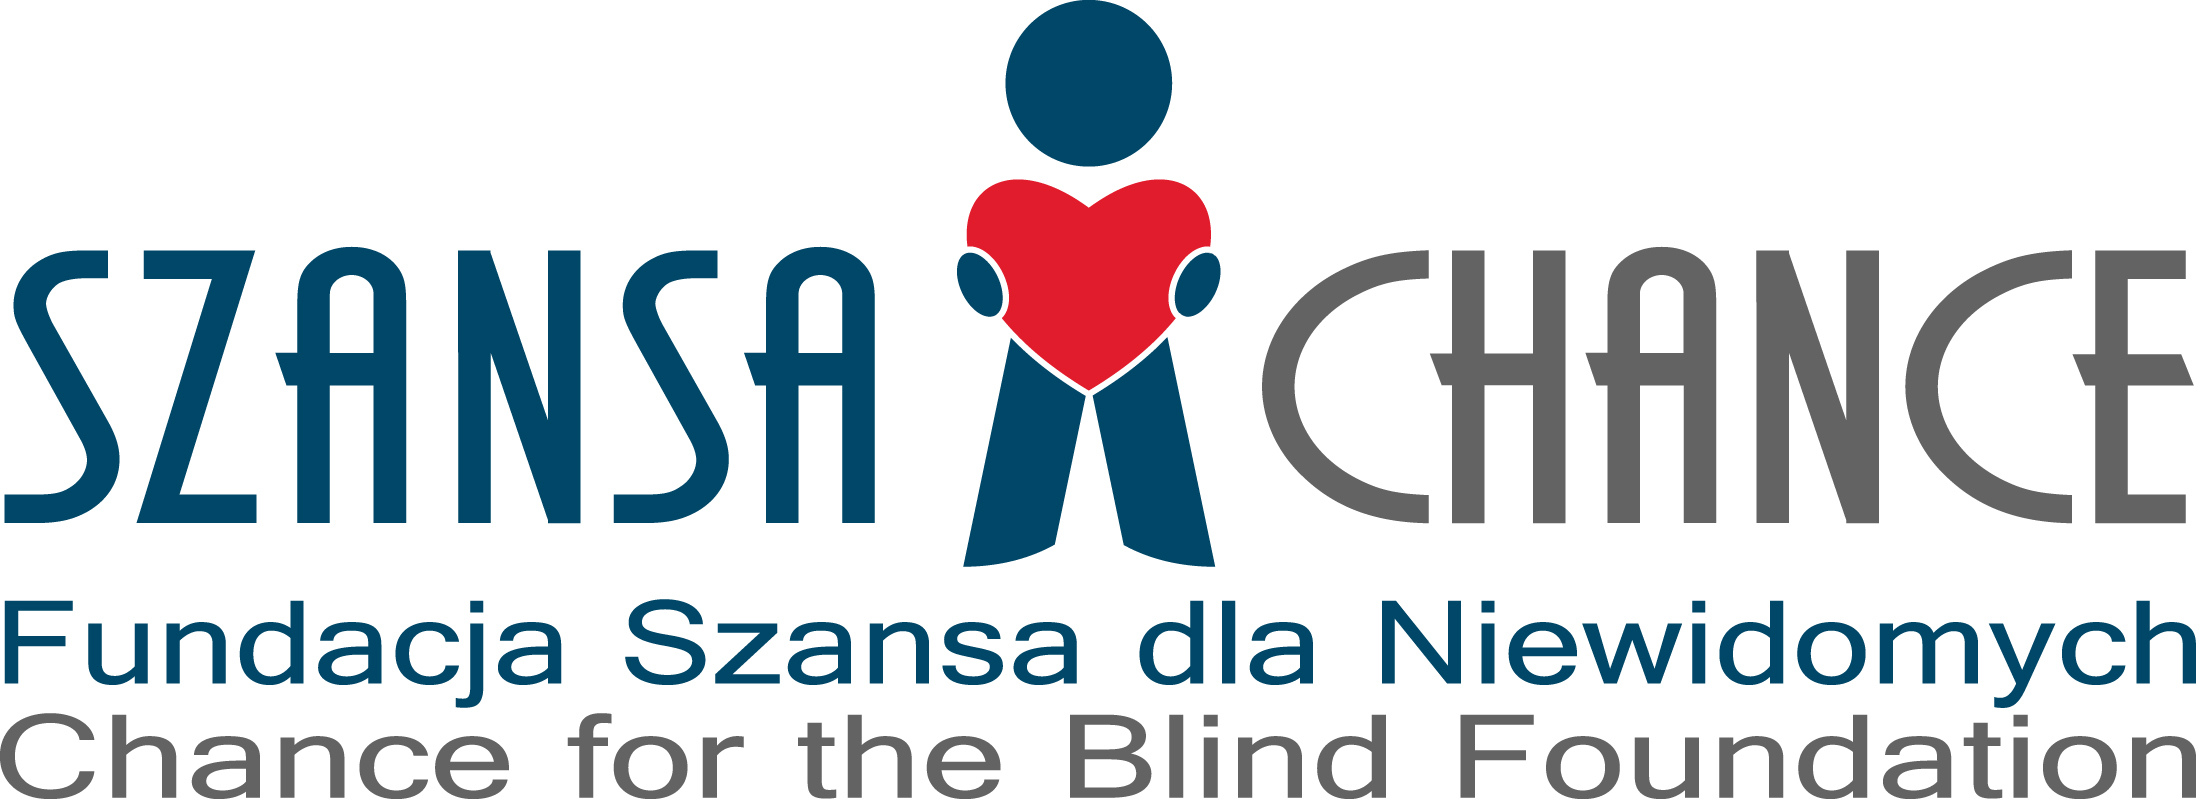 Fundacja Szansa dla Niewidomych - logo